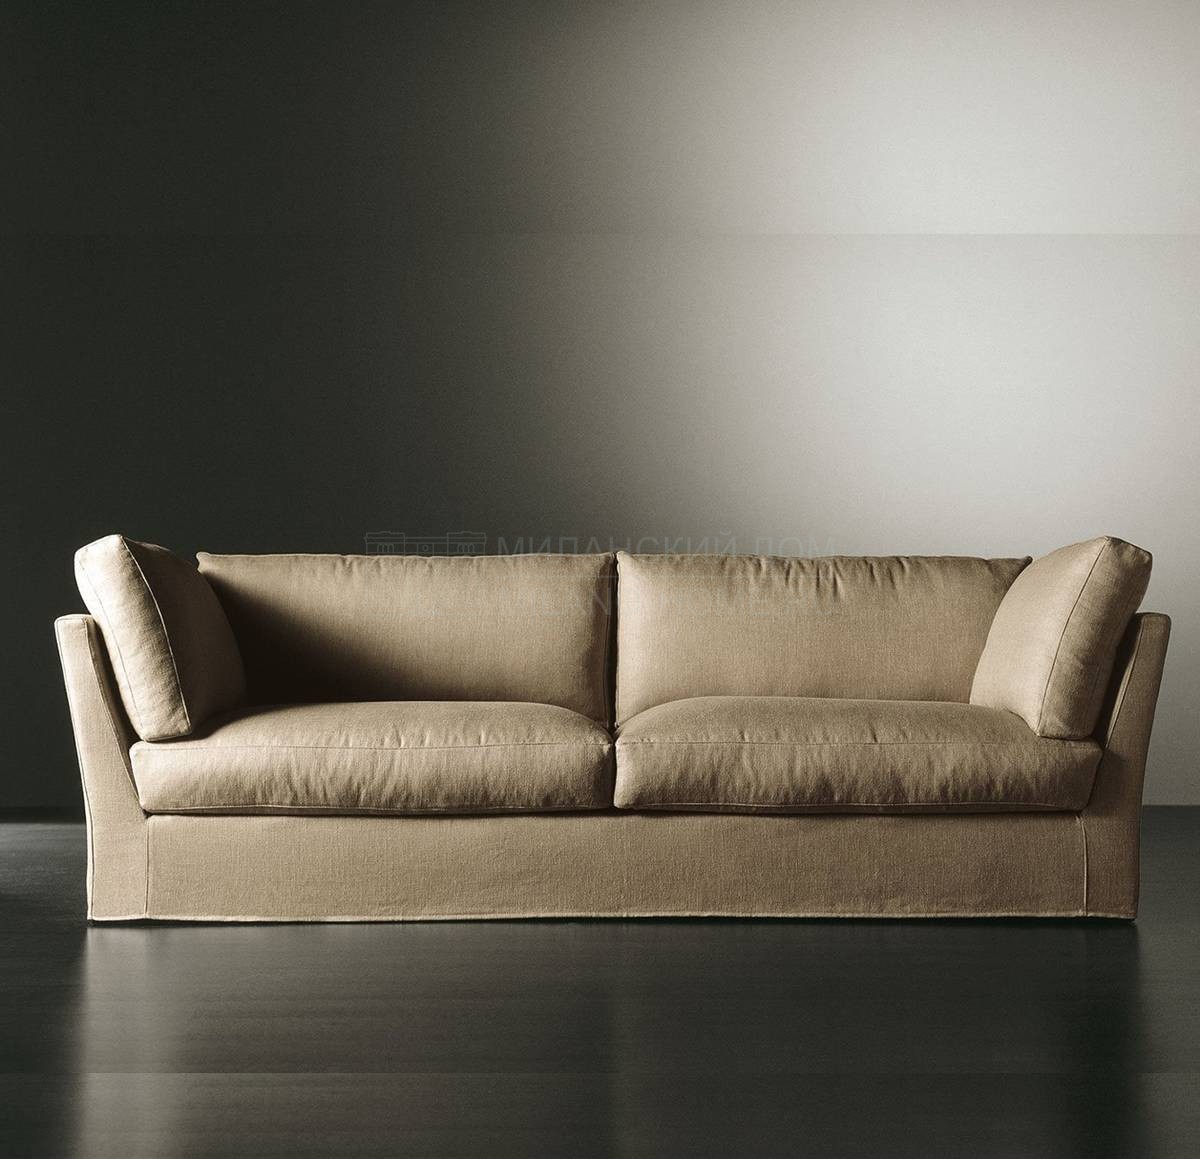 Прямой диван Queen straight из Италии фабрики MERIDIANI